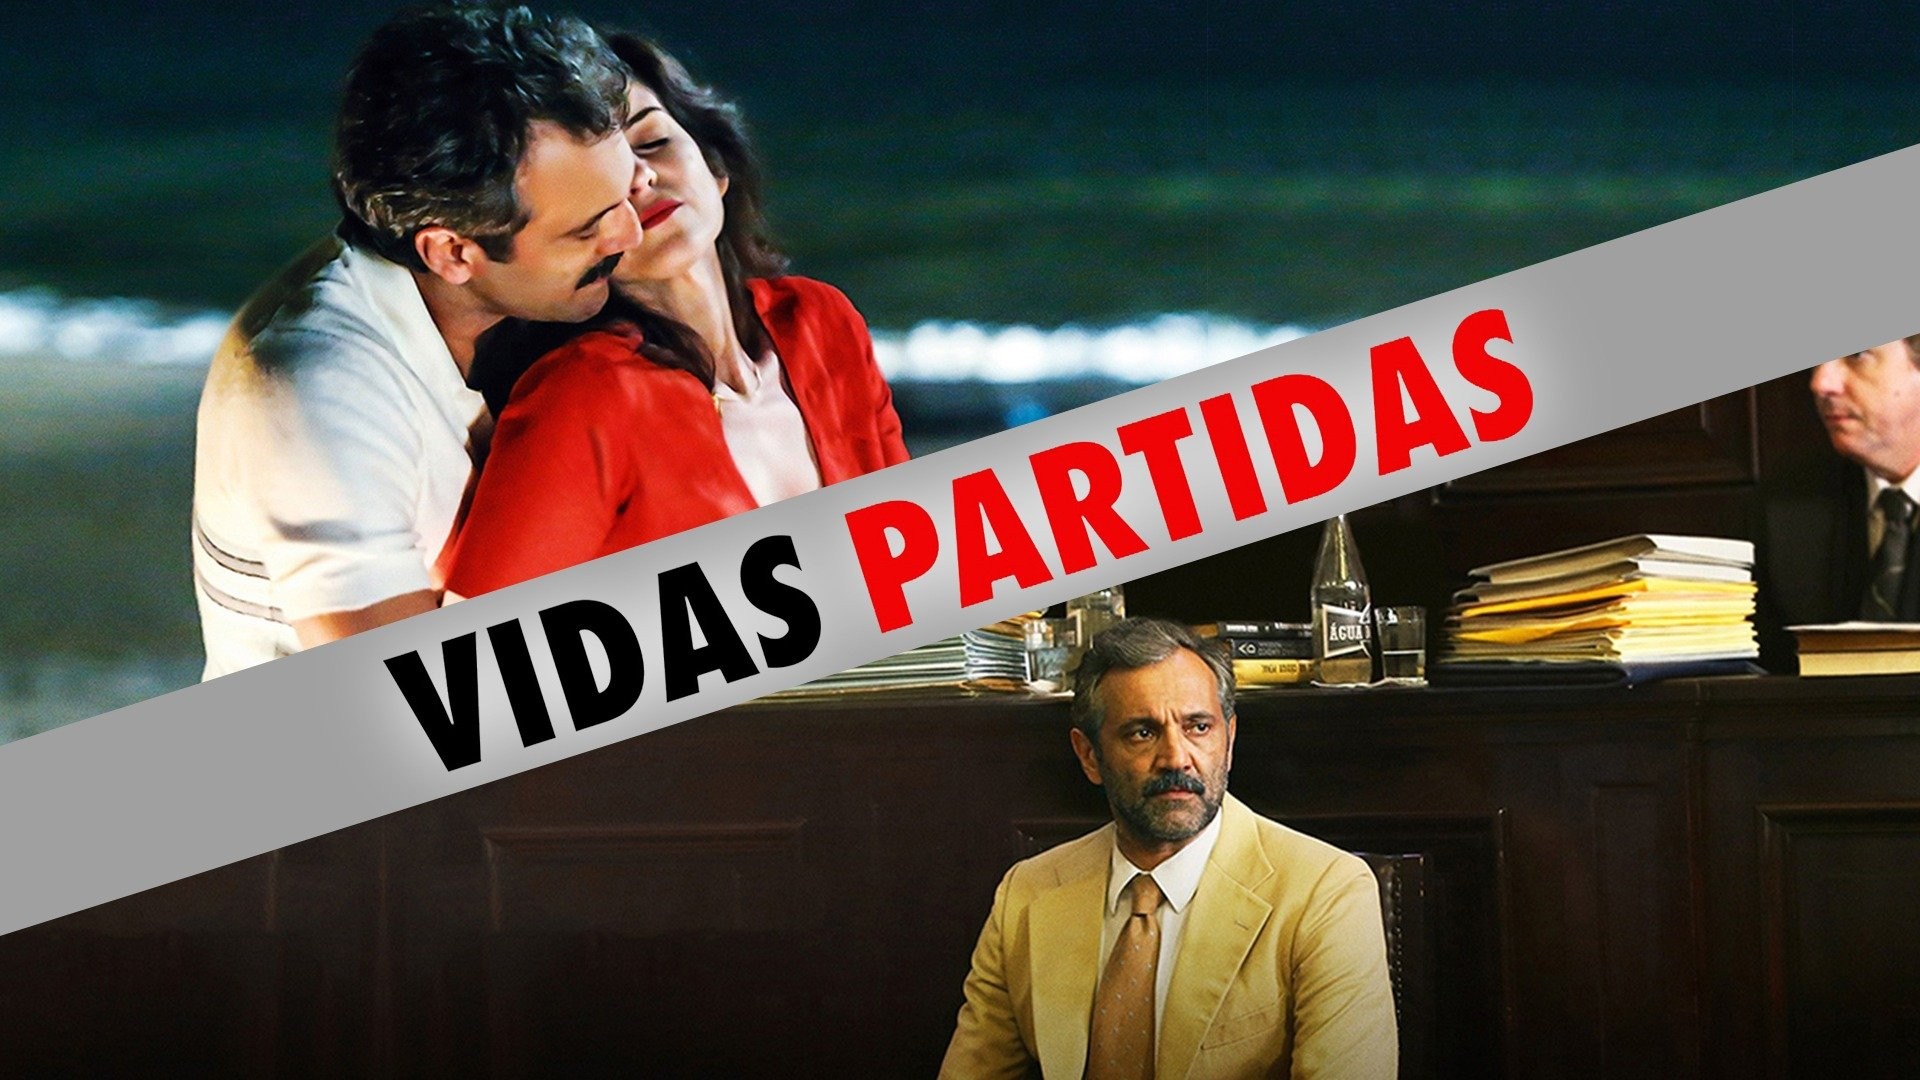 Vidas Partidas (2016) - IMDb